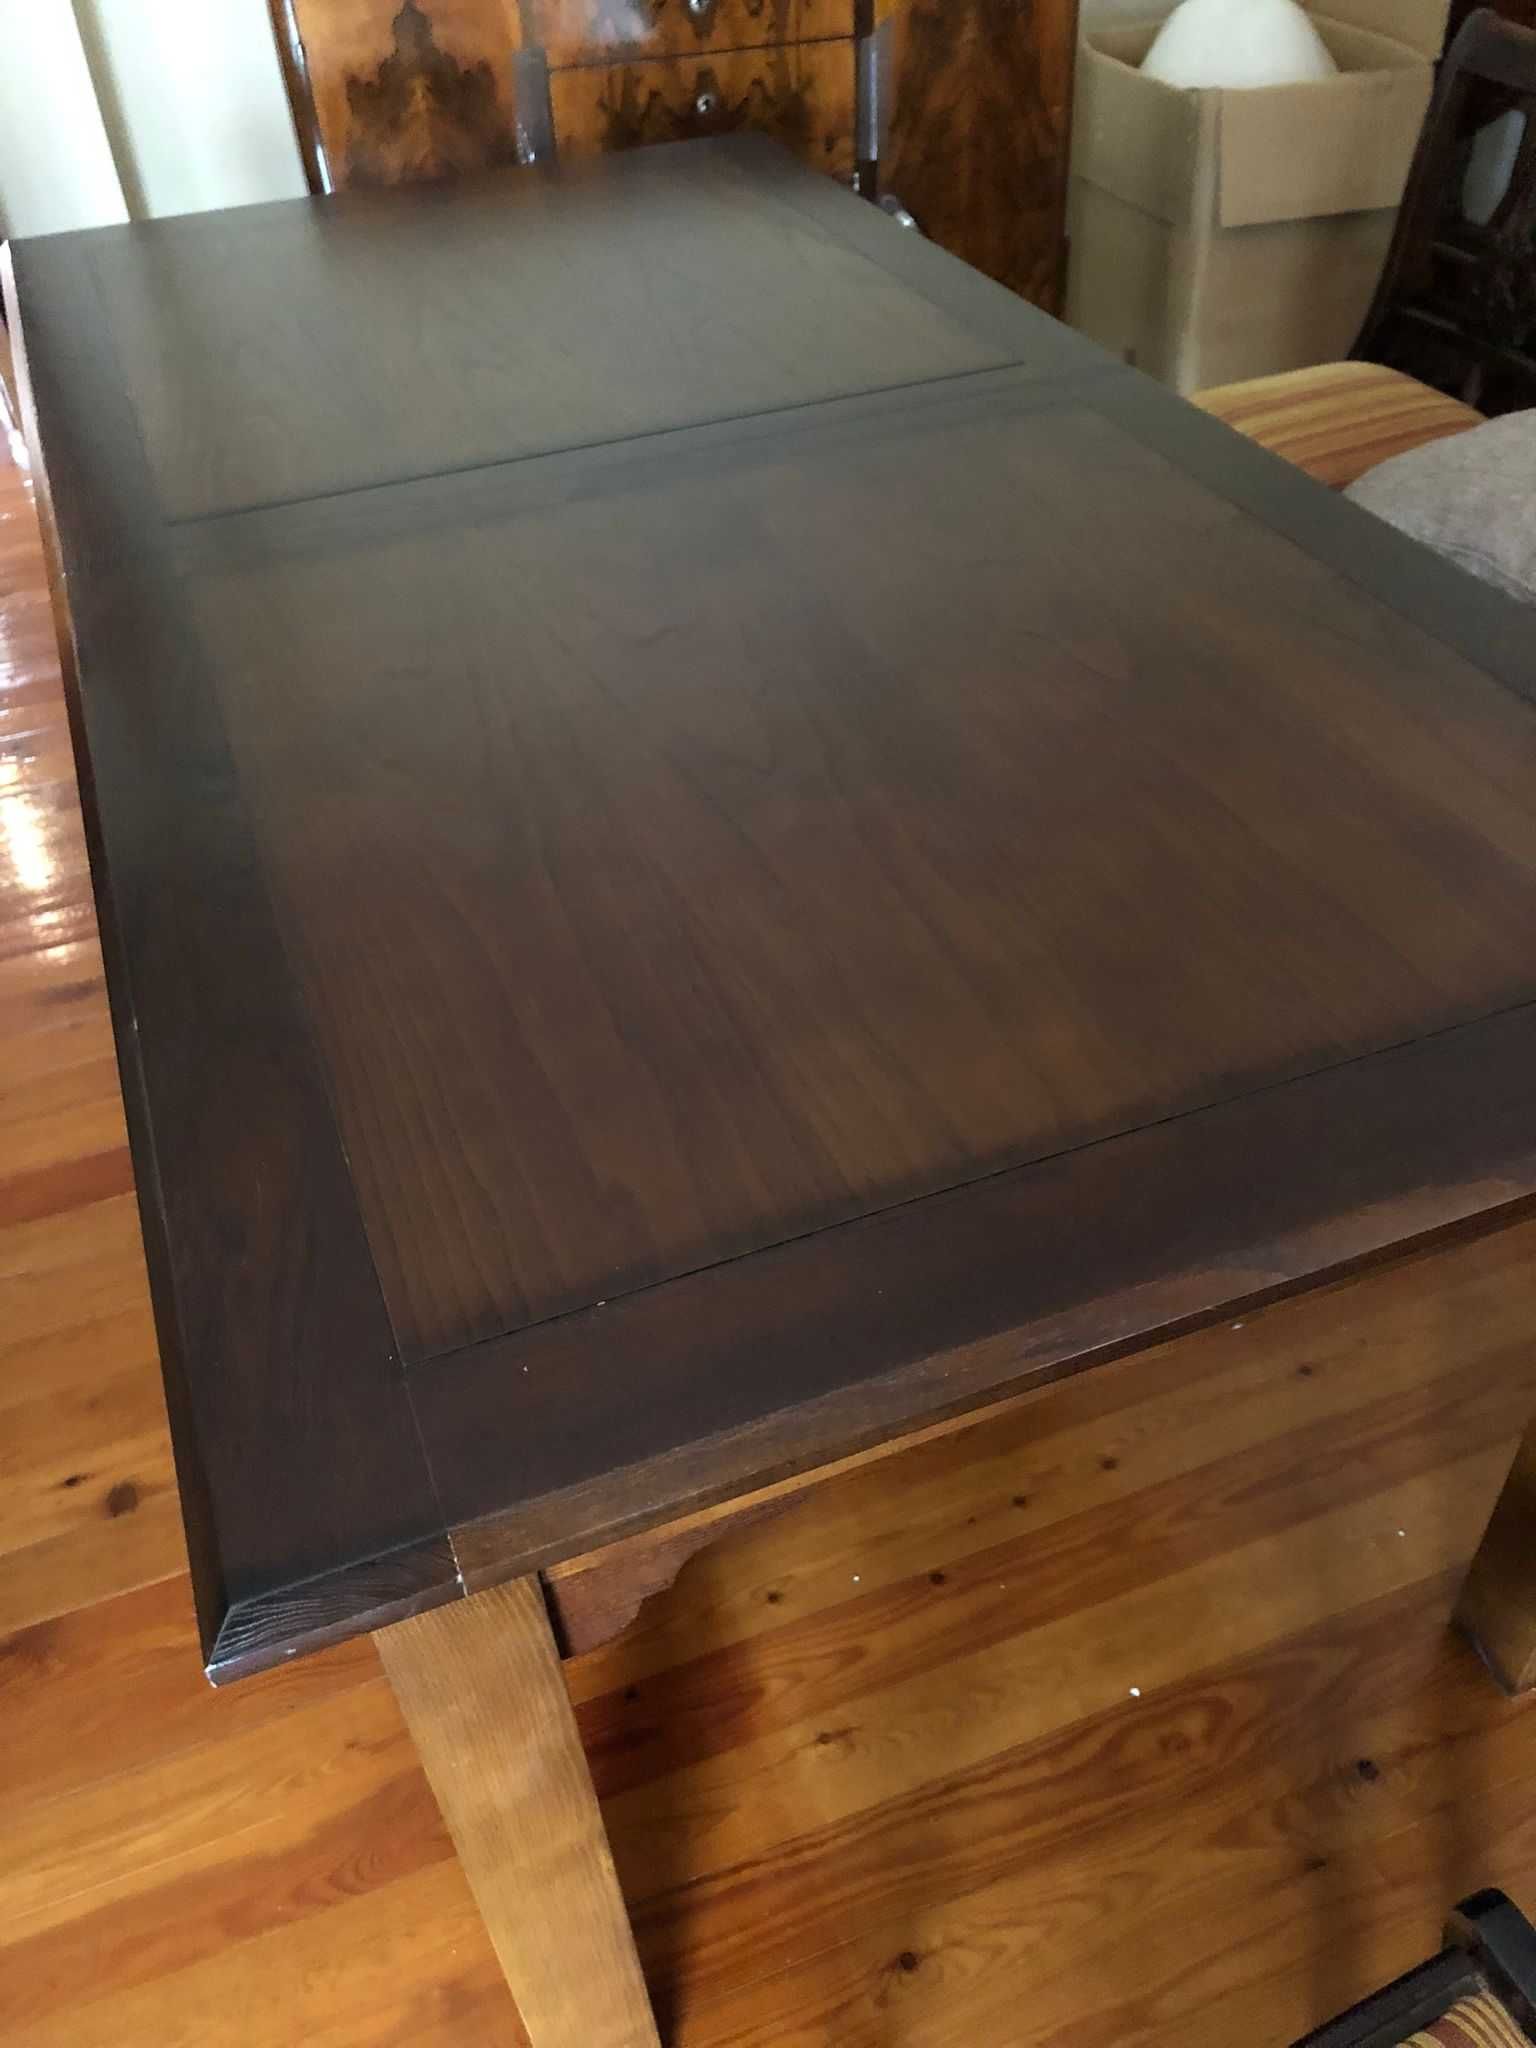 Mesa de jantar de madeira